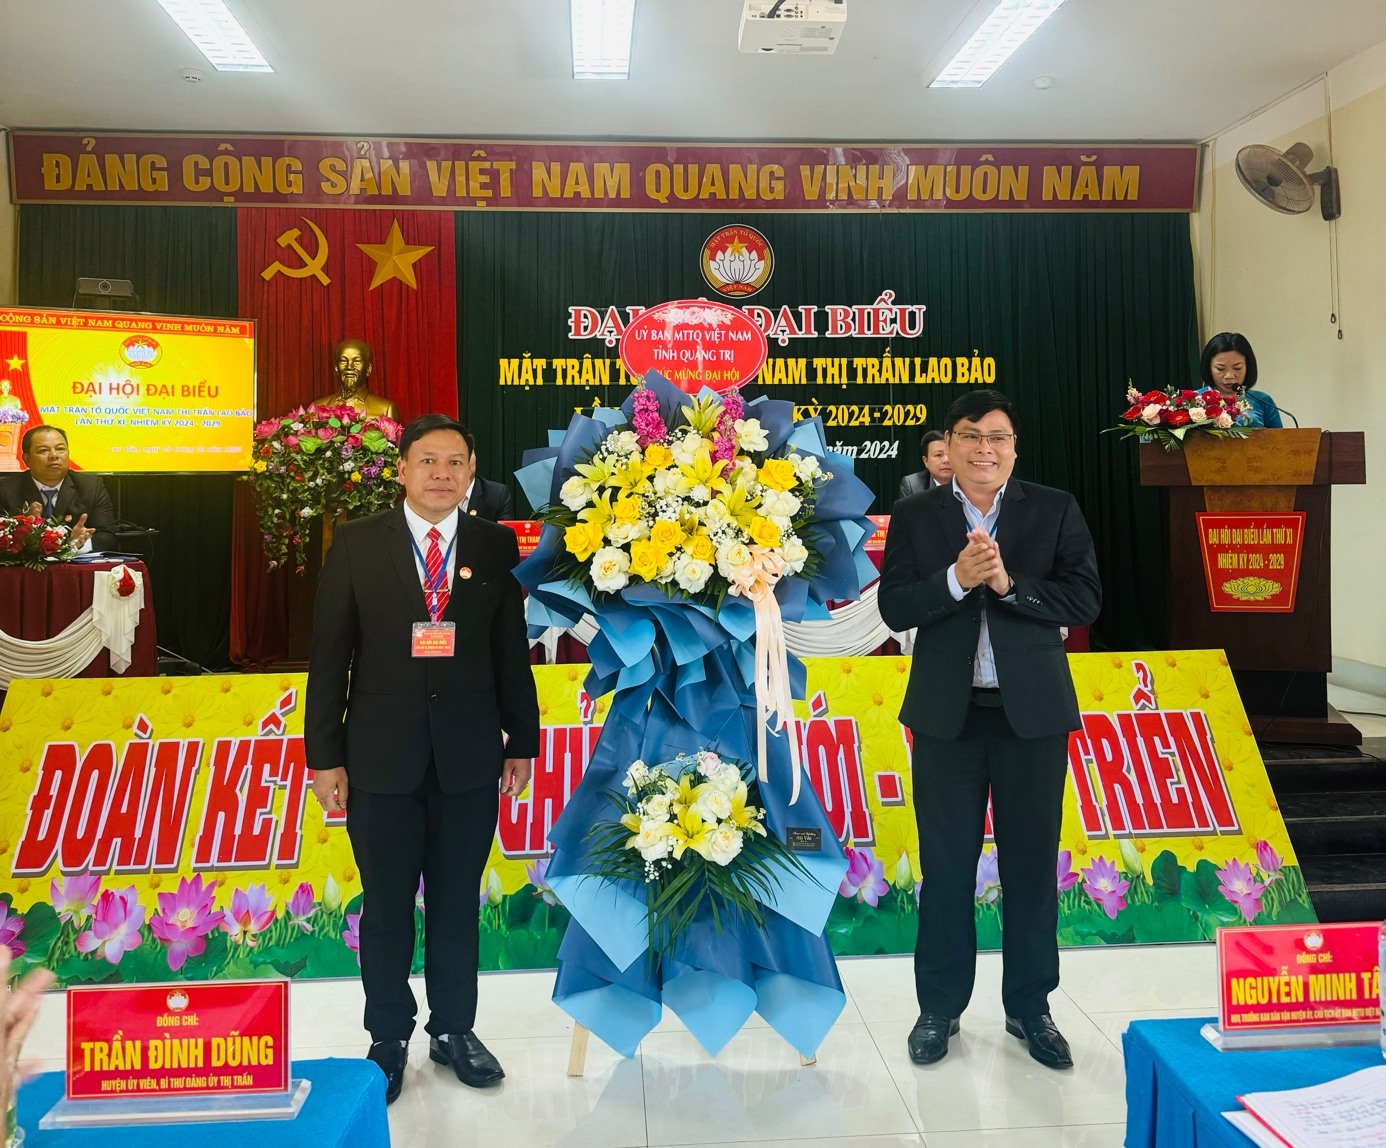 Đồng chí Dương Tân Long, Phó Chủ tịch Uỷ ban MTTQ Việt Nam tỉnh tặng hoa chúc mừng Đại hội.